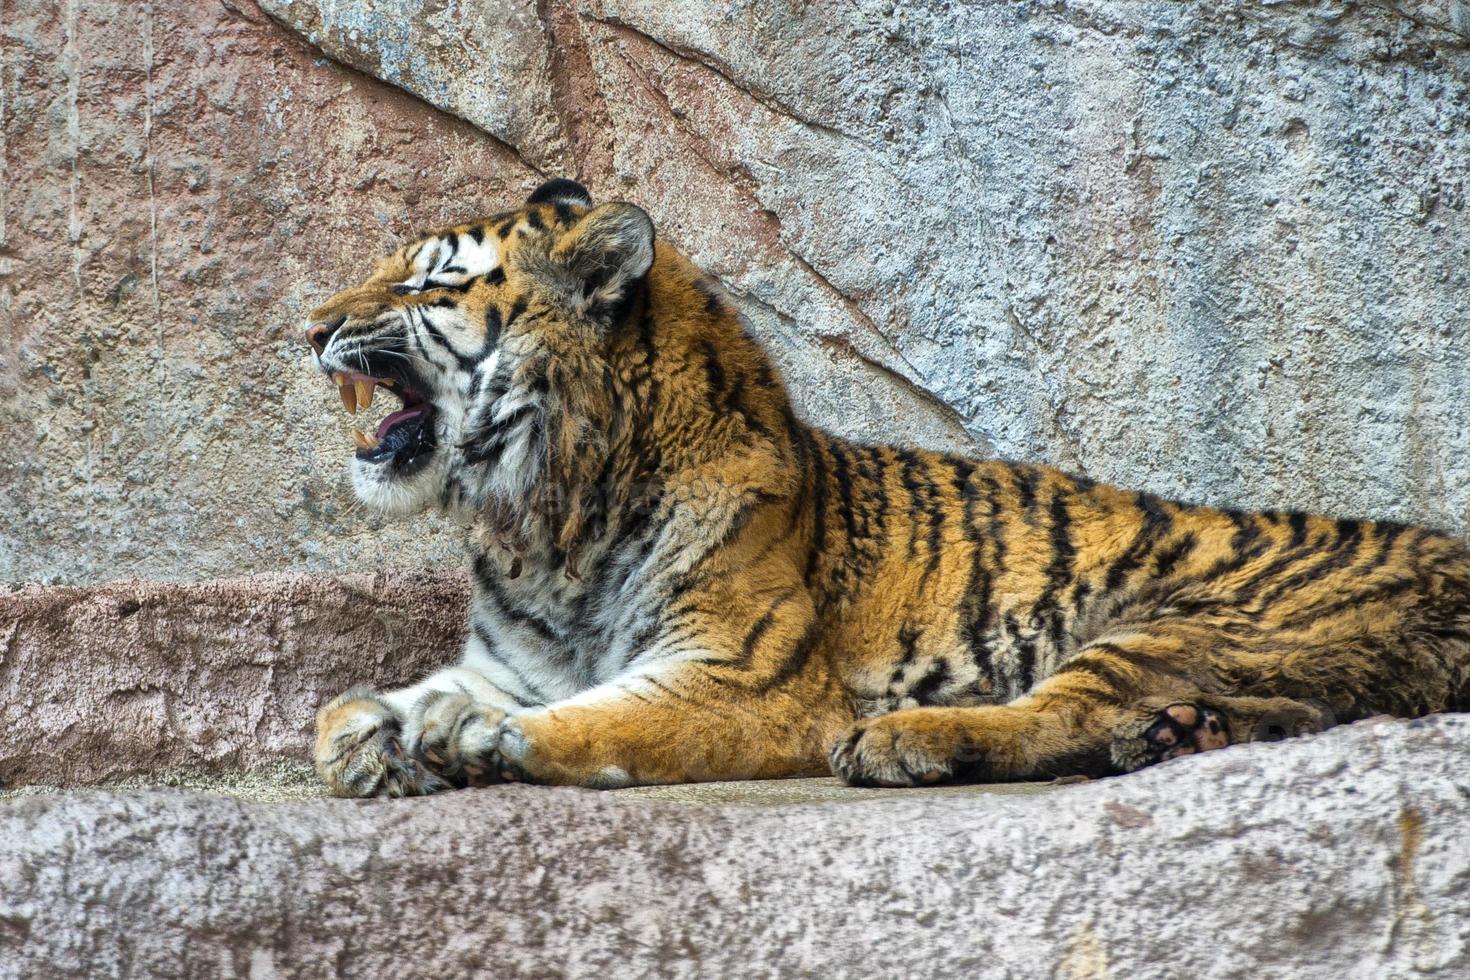 Tiger while yawning photo